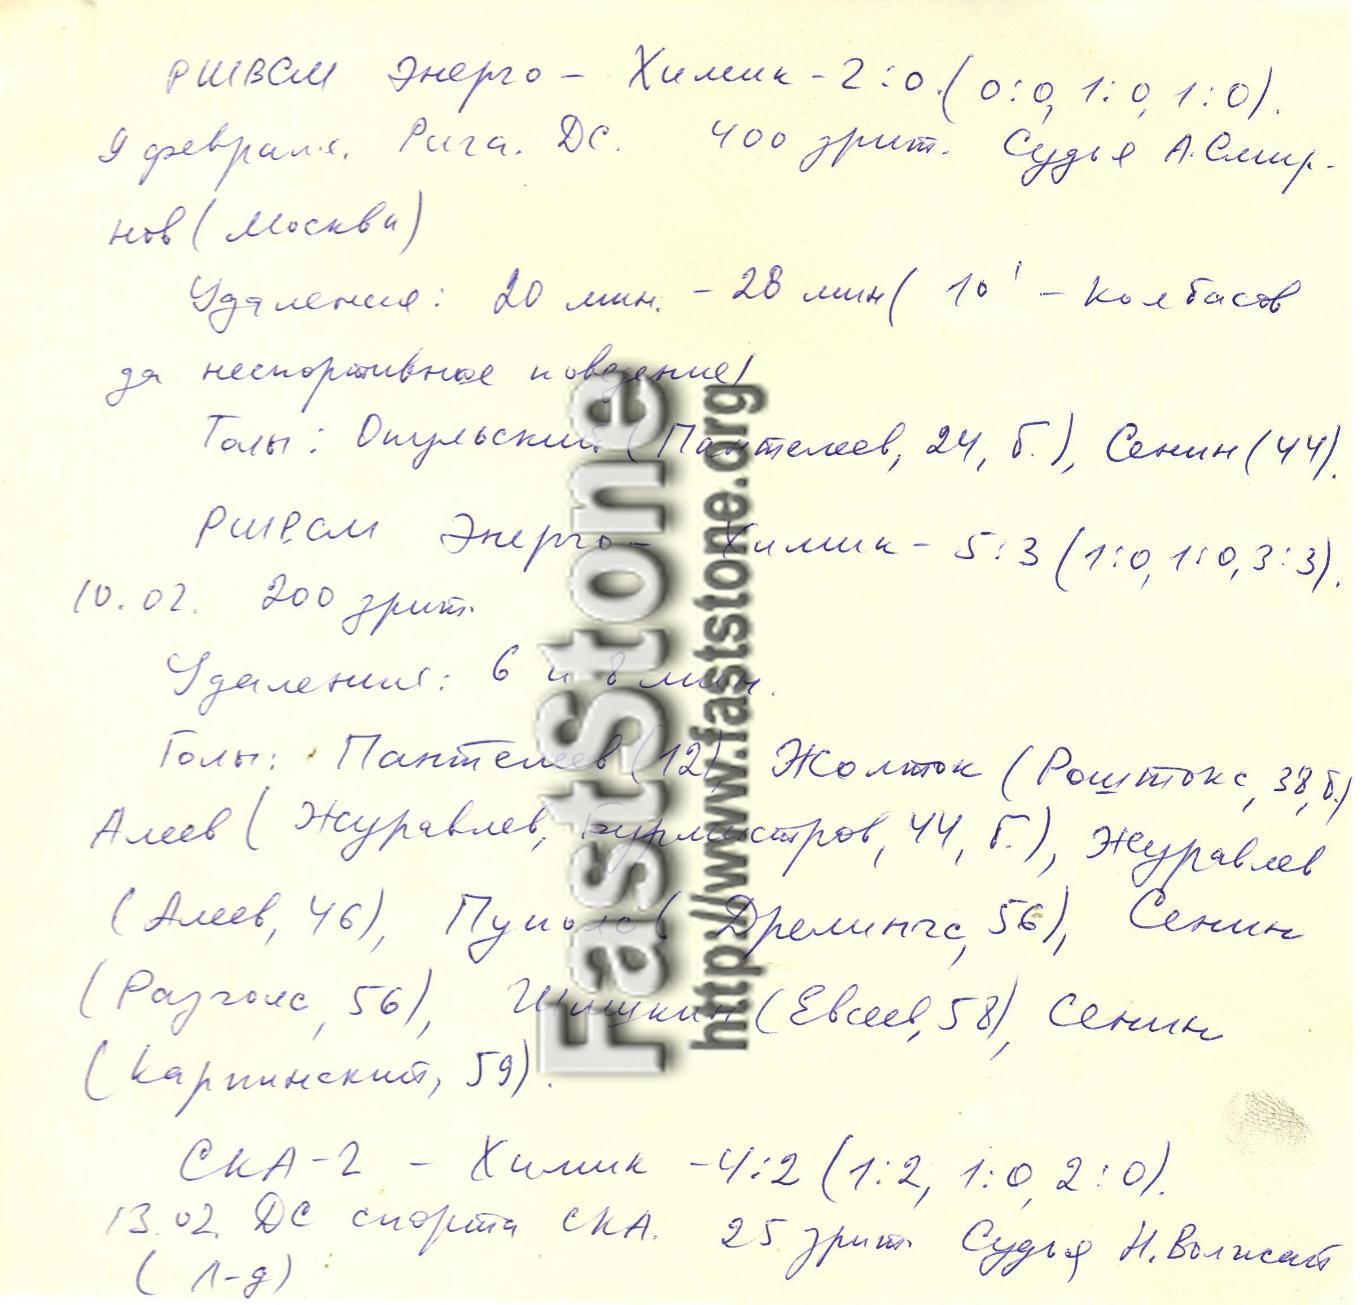 РШВСМ Энерго Рига + СКА-2 Ленинград – Кристалл Саратов 09-10/13-14.02.1990 Отчет